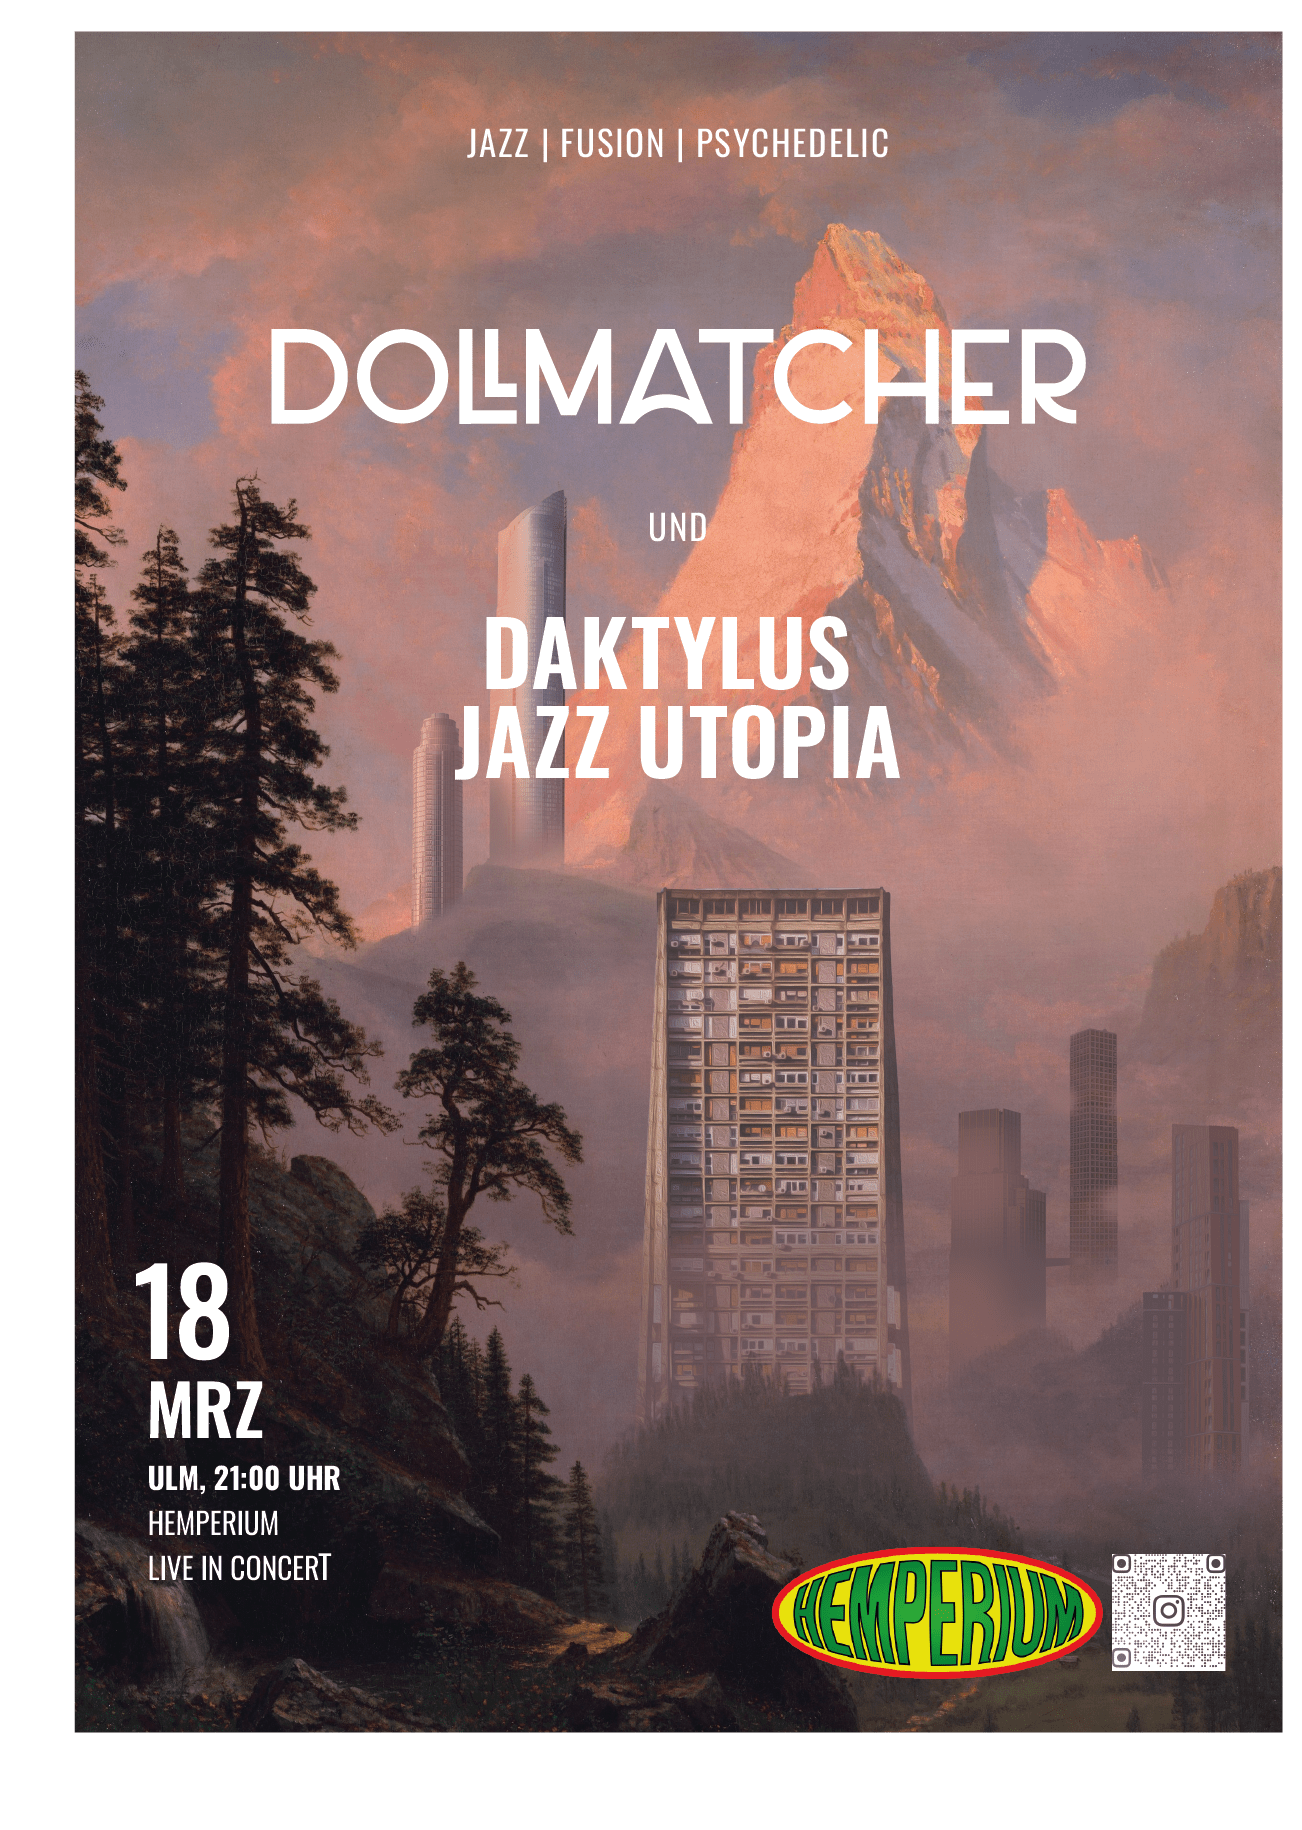 Dollmatcher & Daktylus Jazz Utopia